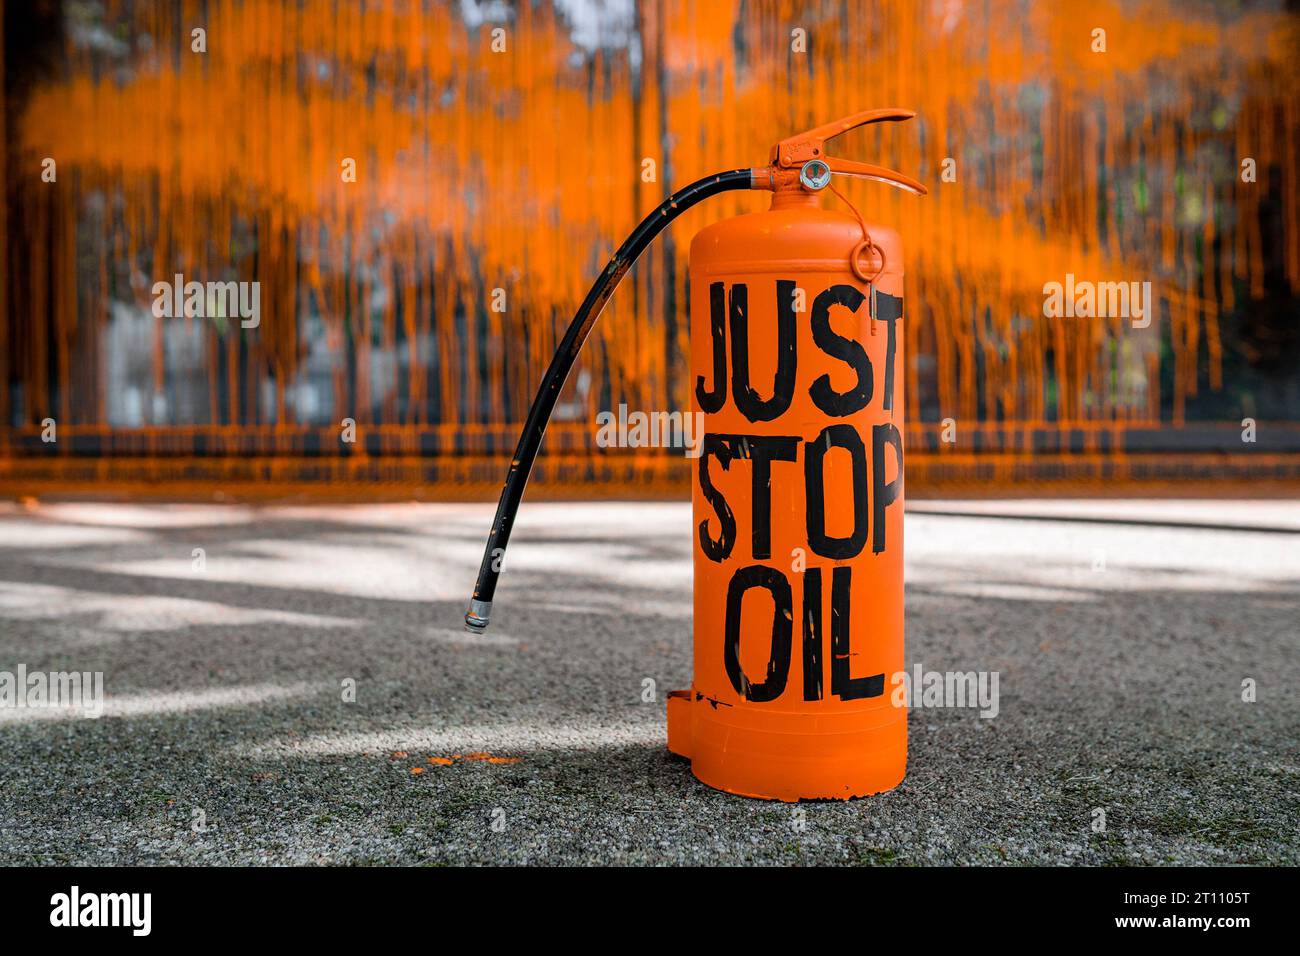 Ben, un étudiant de 21 ans, peint un bâtiment de l'Université de Bristol au nom de Just Stop Oil et est arrêté. Banque D'Images